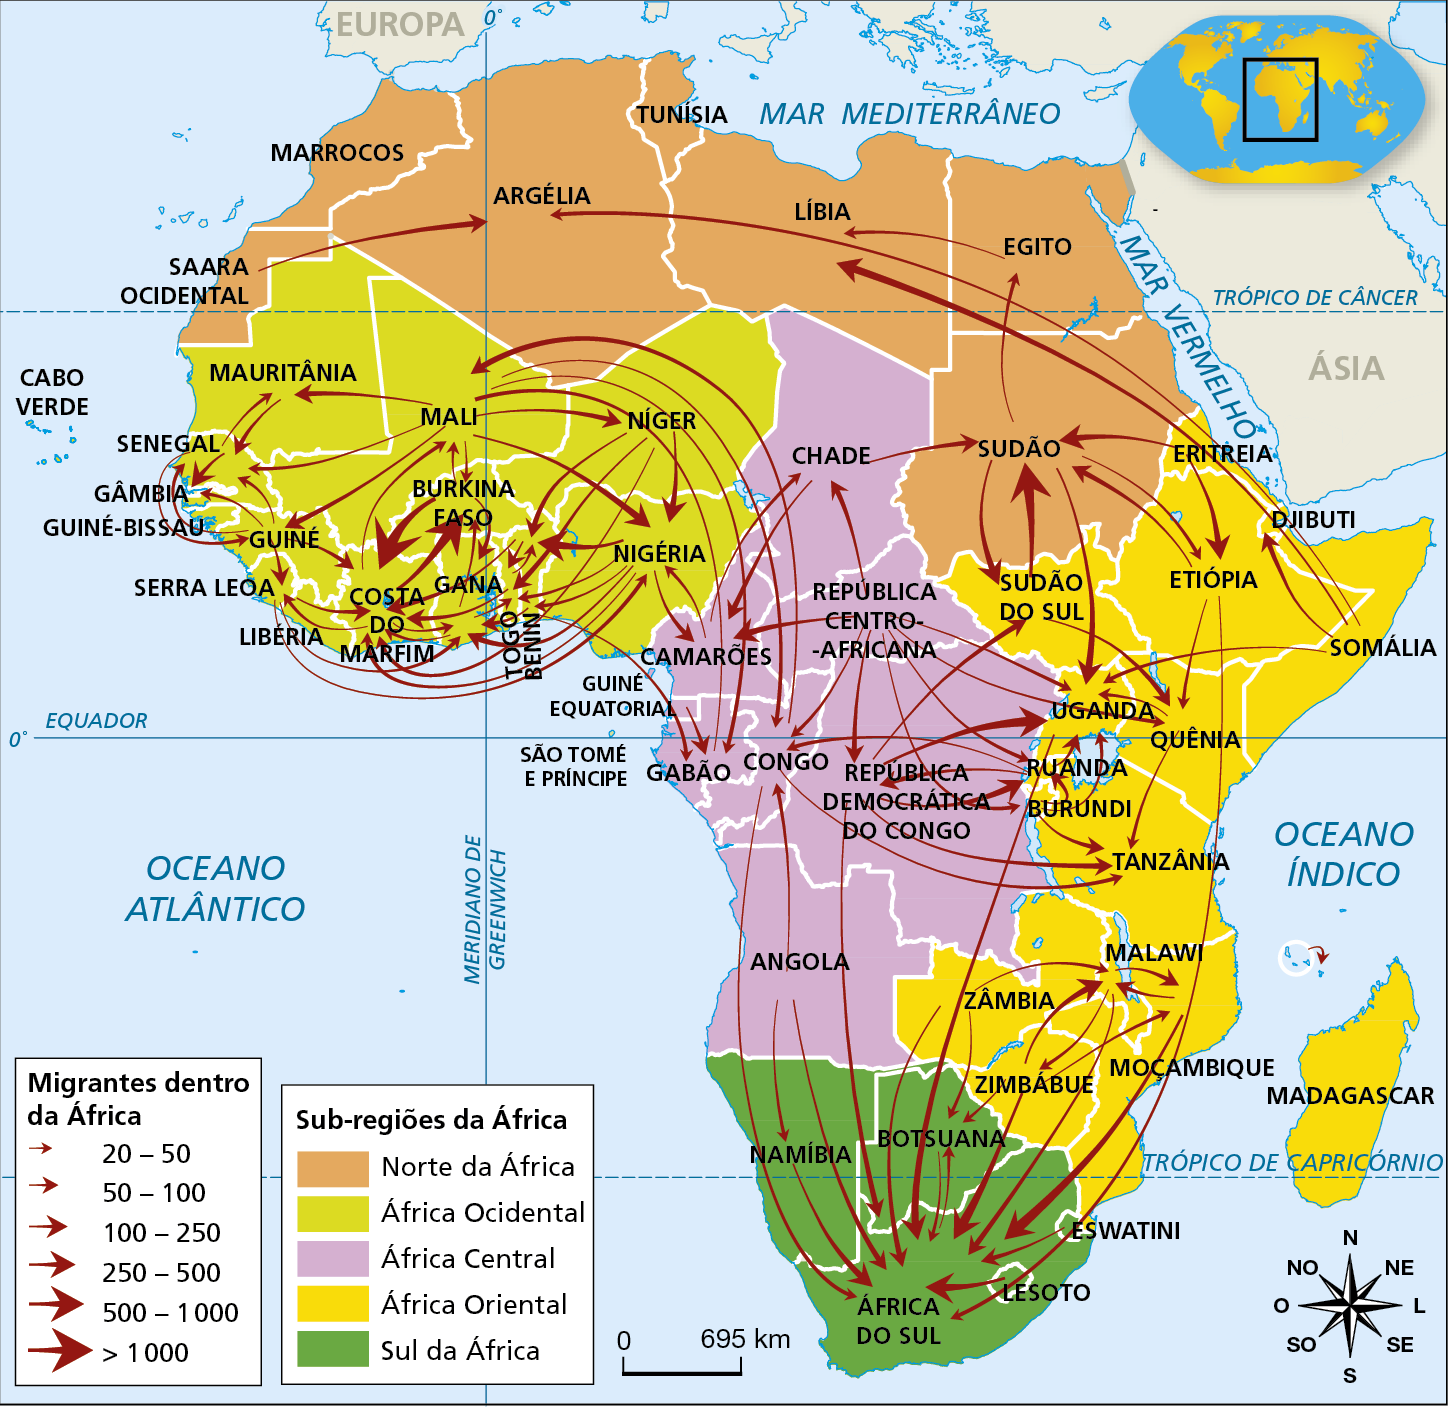 Mapa.  Migrações no continente africano em 2015. As cores da legenda indicam as sub-regiões da África e estão identificadas com as seguintes cores: Rosa-claro: Norte da África, que inclui o Saara Ocidental, o Marrocos, a Argélia, a Tunísia, a Líbia, o Egito e o Sudão. Verde-claro: África Ocidental, que inclui A Mauritânia, o Senegal, a Gâmbia, Guiné-Bissau, a Guiné, Serra Leoa, a Libéria, a Costa do Marfim, Gana, Togo, Benin. a Nigéria, o Níger, o Mali, e Burkina Faso. Lilás: África Central, que inclui o Chade, a República Centro-africana, Camarões, a Guiné Equatorial, São Tomé e Príncipe, o Gabão, o Congo, a República Democrática do Congo e Angola. Amarelo: África Oriental, que inclui a Eritreia, a Etiópia, o Sudão do Sul, Uganda, Ruanda, Burundi, Djibuti, a Somália, o Quênia, a Tanzânia, o Malawi, a Zâmbia, Moçambique, o Zimbábue e Madagascar. Verde-escuro: Sul da África, que inclui a Namíbia, Botsuana, Eswatini, Lesoto e a África do Sul. A legenda conta, ainda, com setas mais ou menos espessas, indicando a quantidade de migrantes dentro da África, entre 20 e 50 pessoas; entre 50 e 100 pessoas; entre 100 e 250 pessoas; entre 250 e 500 pessoas; entre 500 e 1000 pessoas e mais de 1000 pessoas. As setas que indicam que há entre 20 e 500 migrantes vão do Sudão para o Egito, do Egito para a Líbia, da Mauritânia para o Senegal e vice-versa, da Guiné para a Gâmbia e Costa do Marfim, da Nigéria para outros países do oeste da África, de Angola para a Namíbia, de Malawi para a Zâmbia e de Angola, Moçambique, Zimbábue e diversos outros países do centro do continente para a África do Sul. As setas que indicam que há entre 500 e 1000 migrantes dentro da África vão do Sudão do Sul para o Sudão e da Costa do Marfim para Burkina Faso. As setas que indicam que há mais de 1000 migrantes vão de Burkina Faso para a Costa do Marfim e vice-versa. Na parte inferior, rosa dos ventos e escala de 0 a 695 quilômetros.